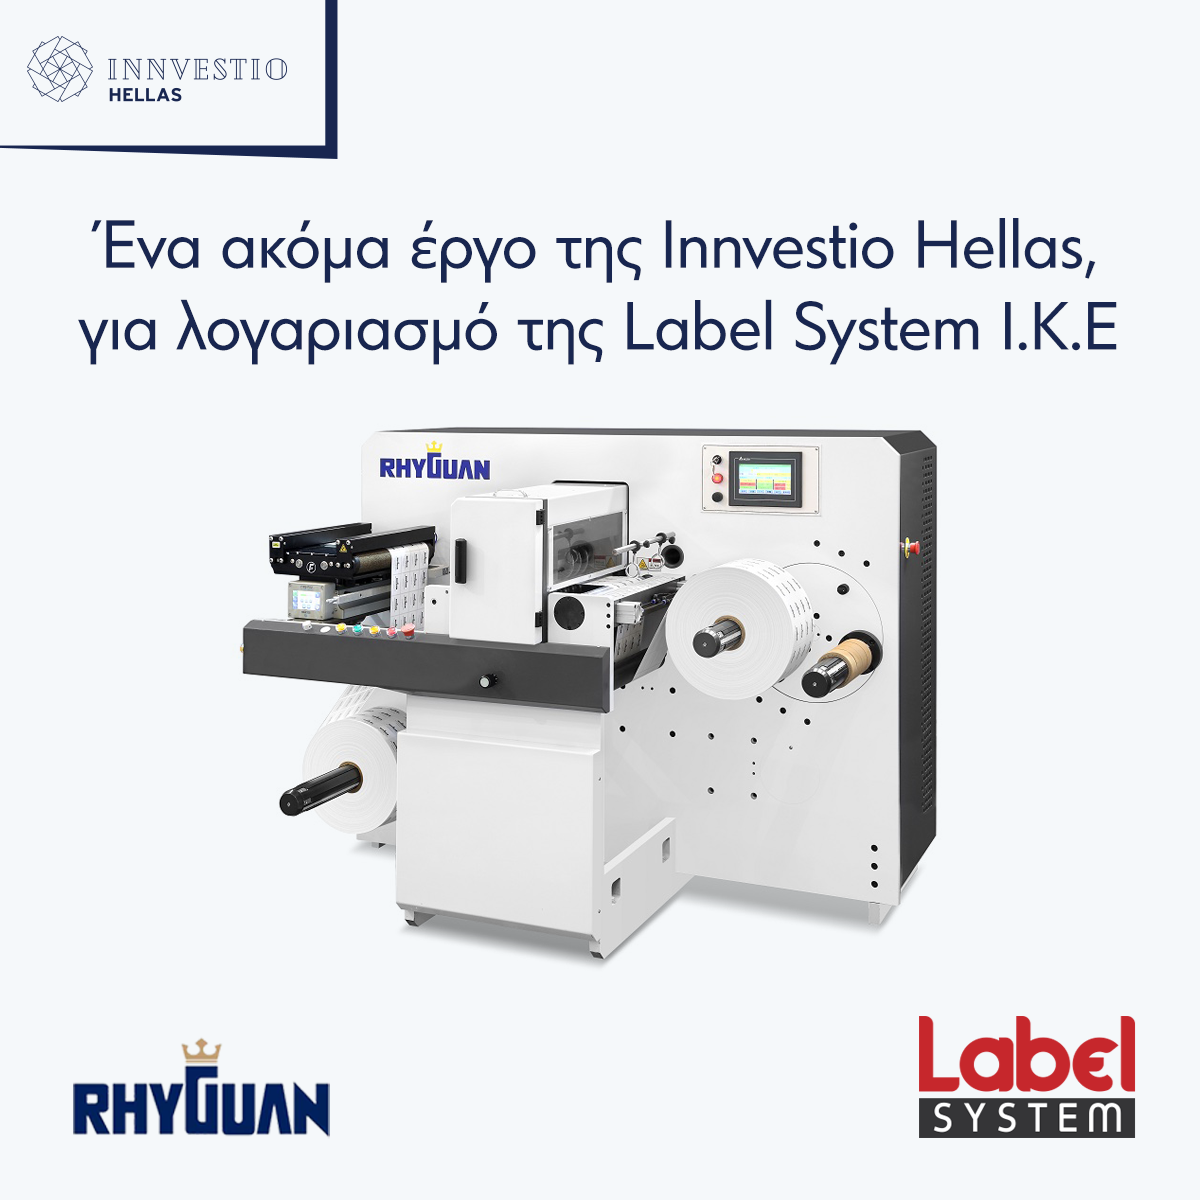 Δελτίο τύπου: Ένα ακόμα έργο της Innvestio Hellas, για λογαριασμό της Label System I.K.E